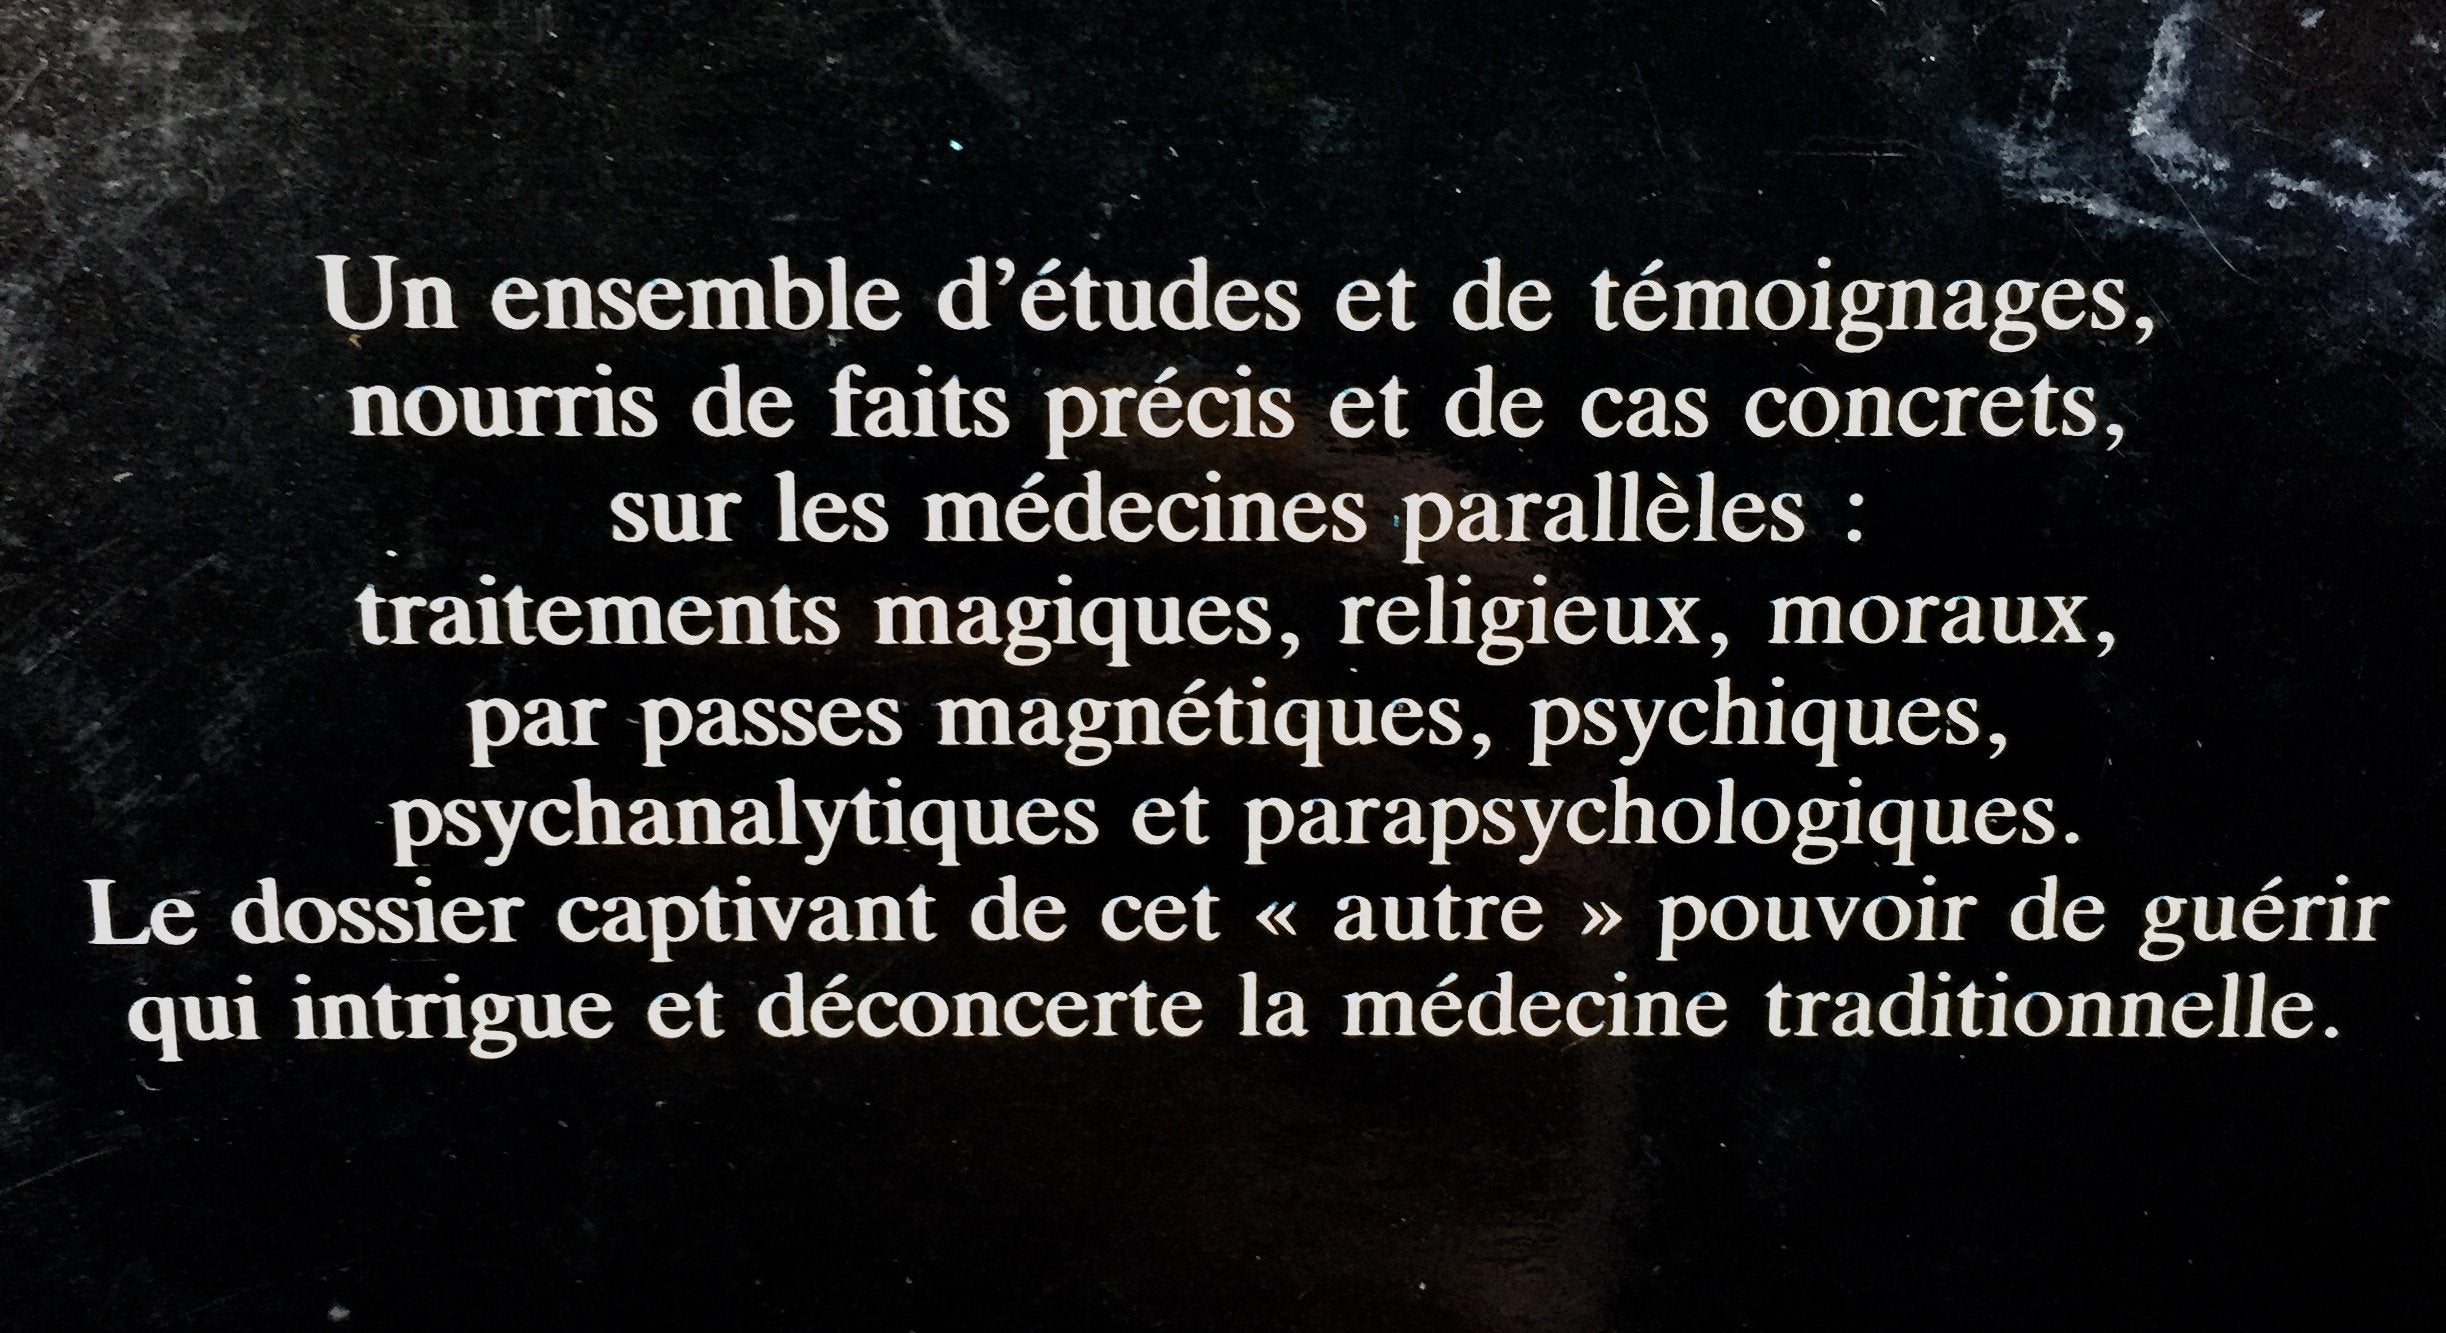 Les Guérisons miraculeuses (François Favre)